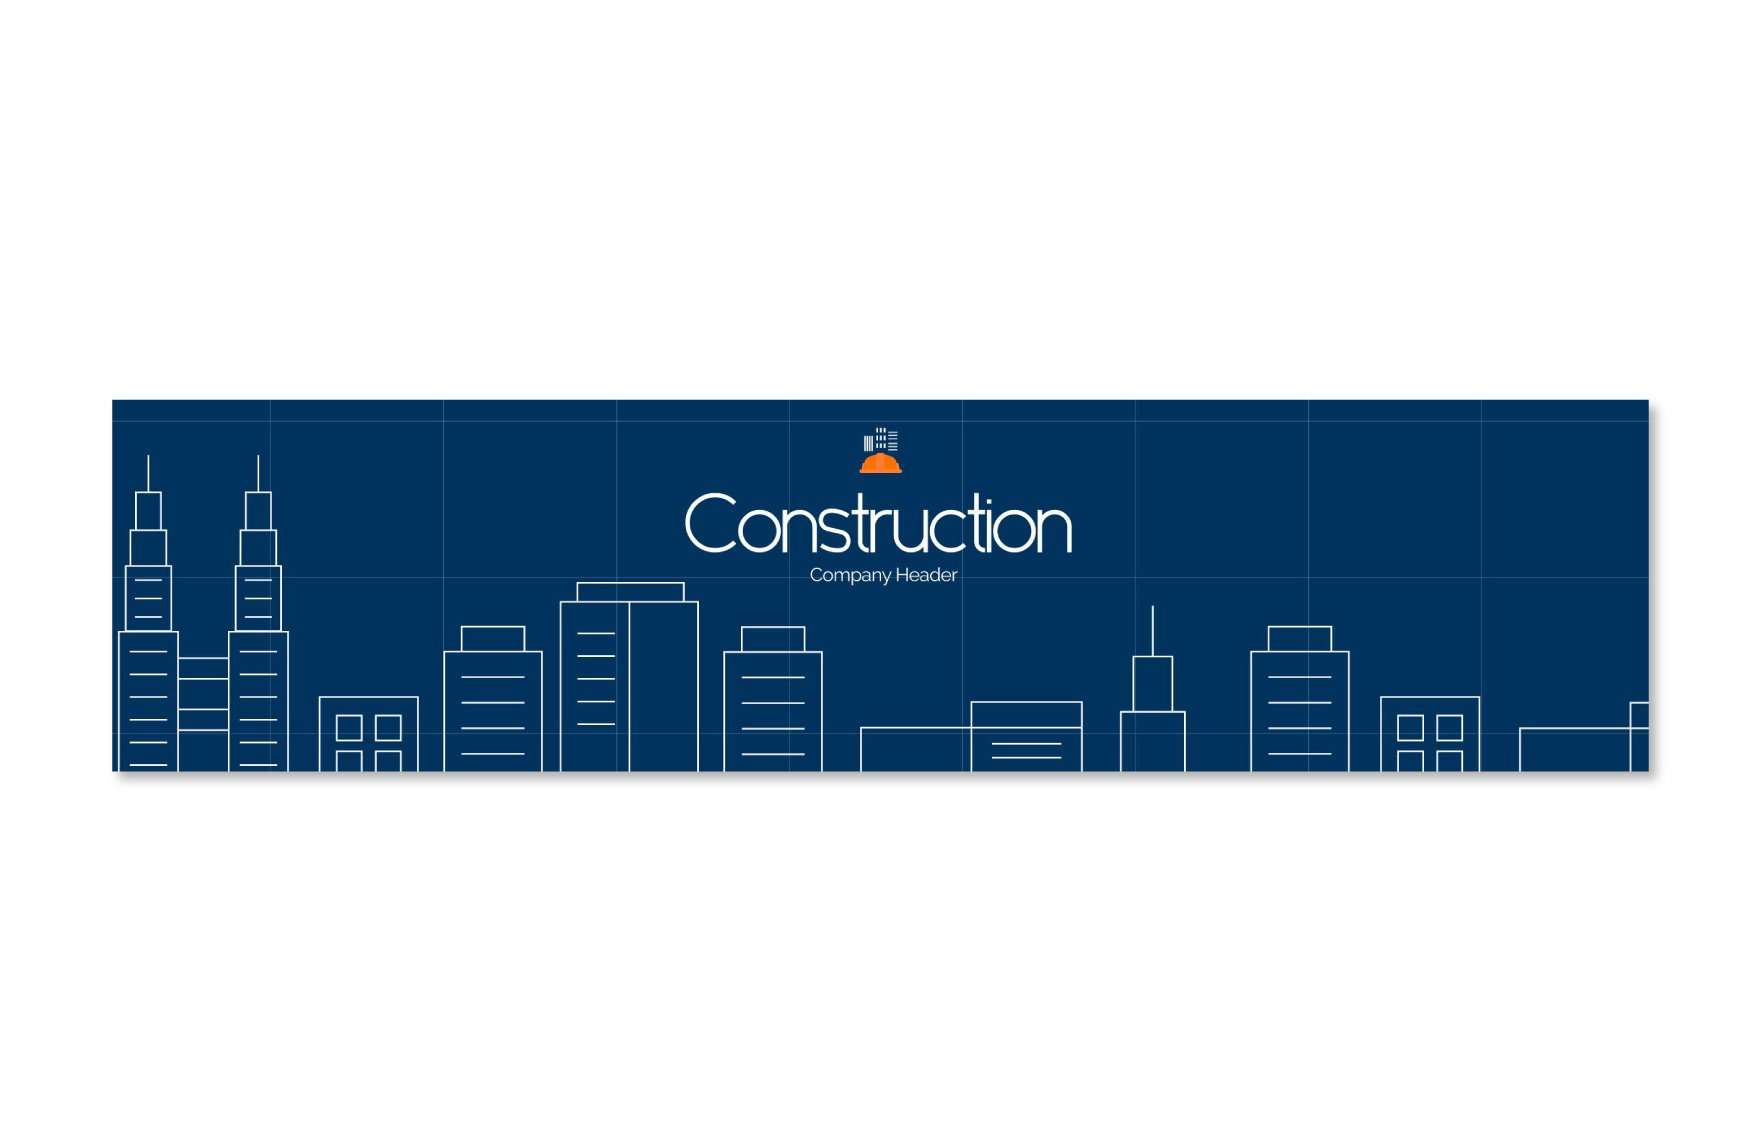 Construction Company Header